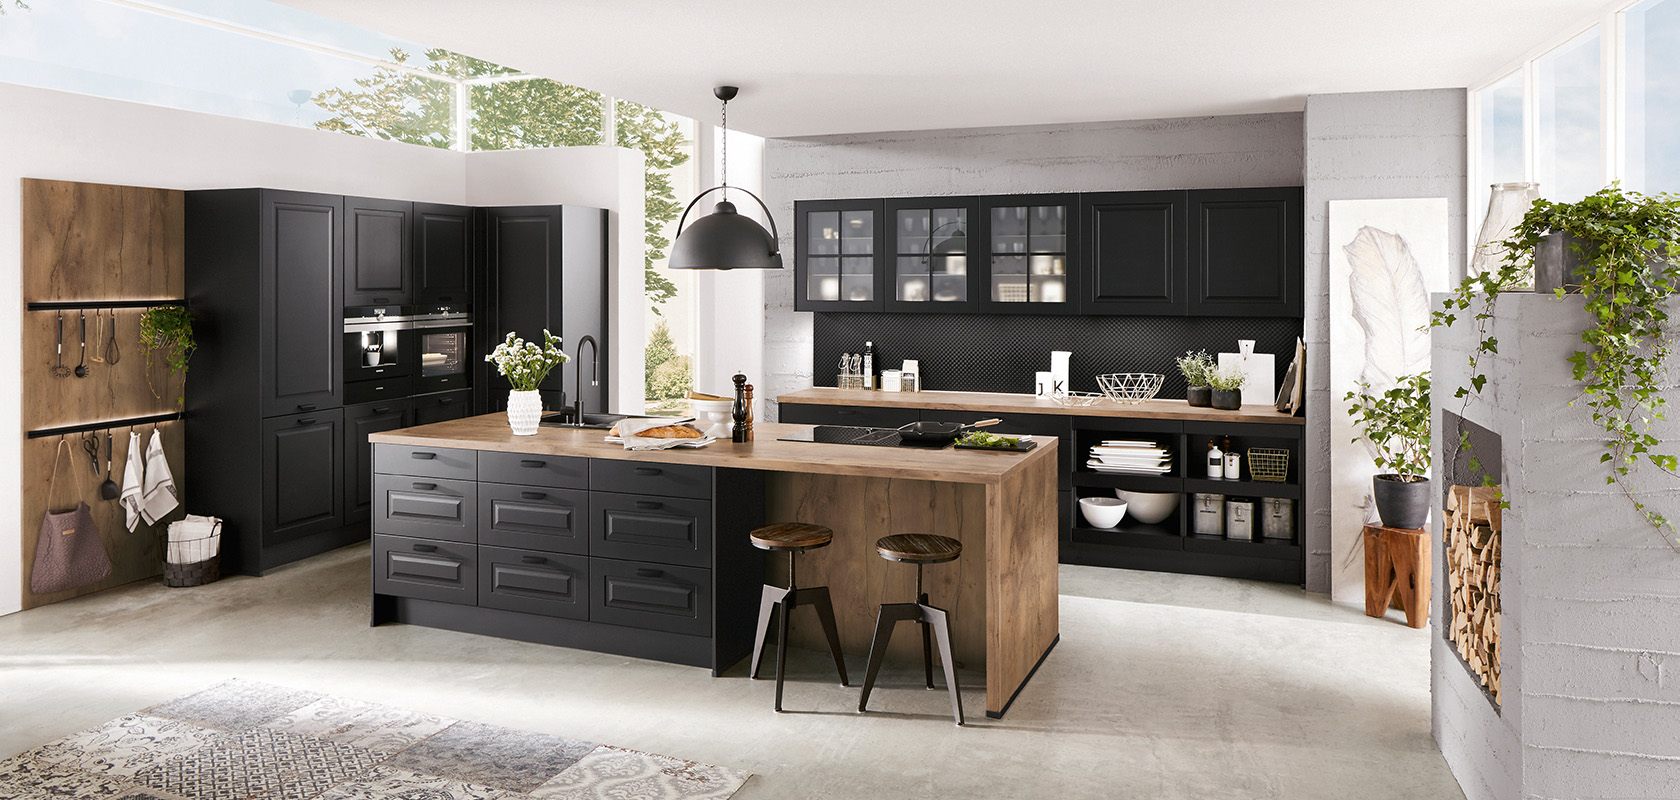 Interior de cocina moderna que muestra gabinetes negros elegantes, acentos de madera y una isla central, infundida con luz natural y vegetación para un espacio elegante y acogedor.